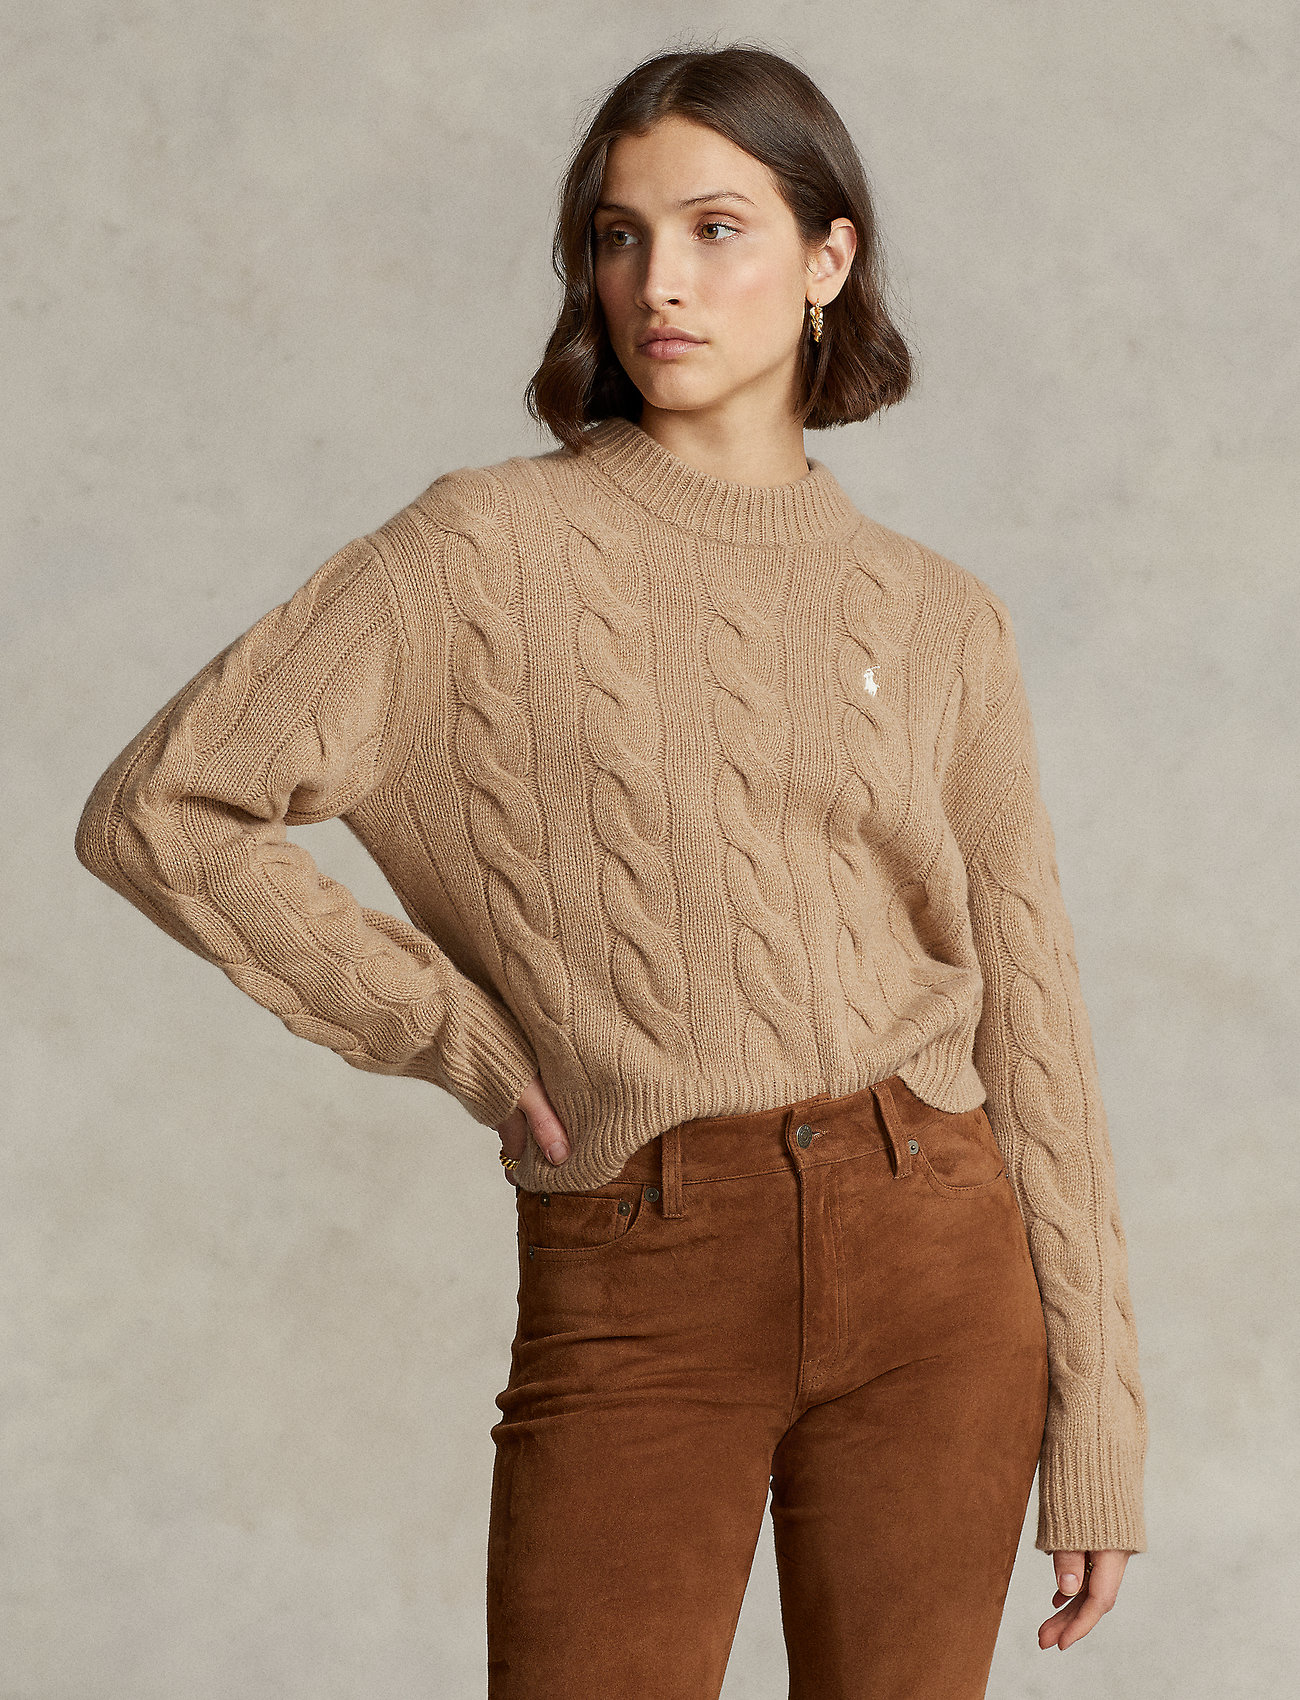 Descubrir 60+ imagen polo ralph lauren wool cashmere sweater